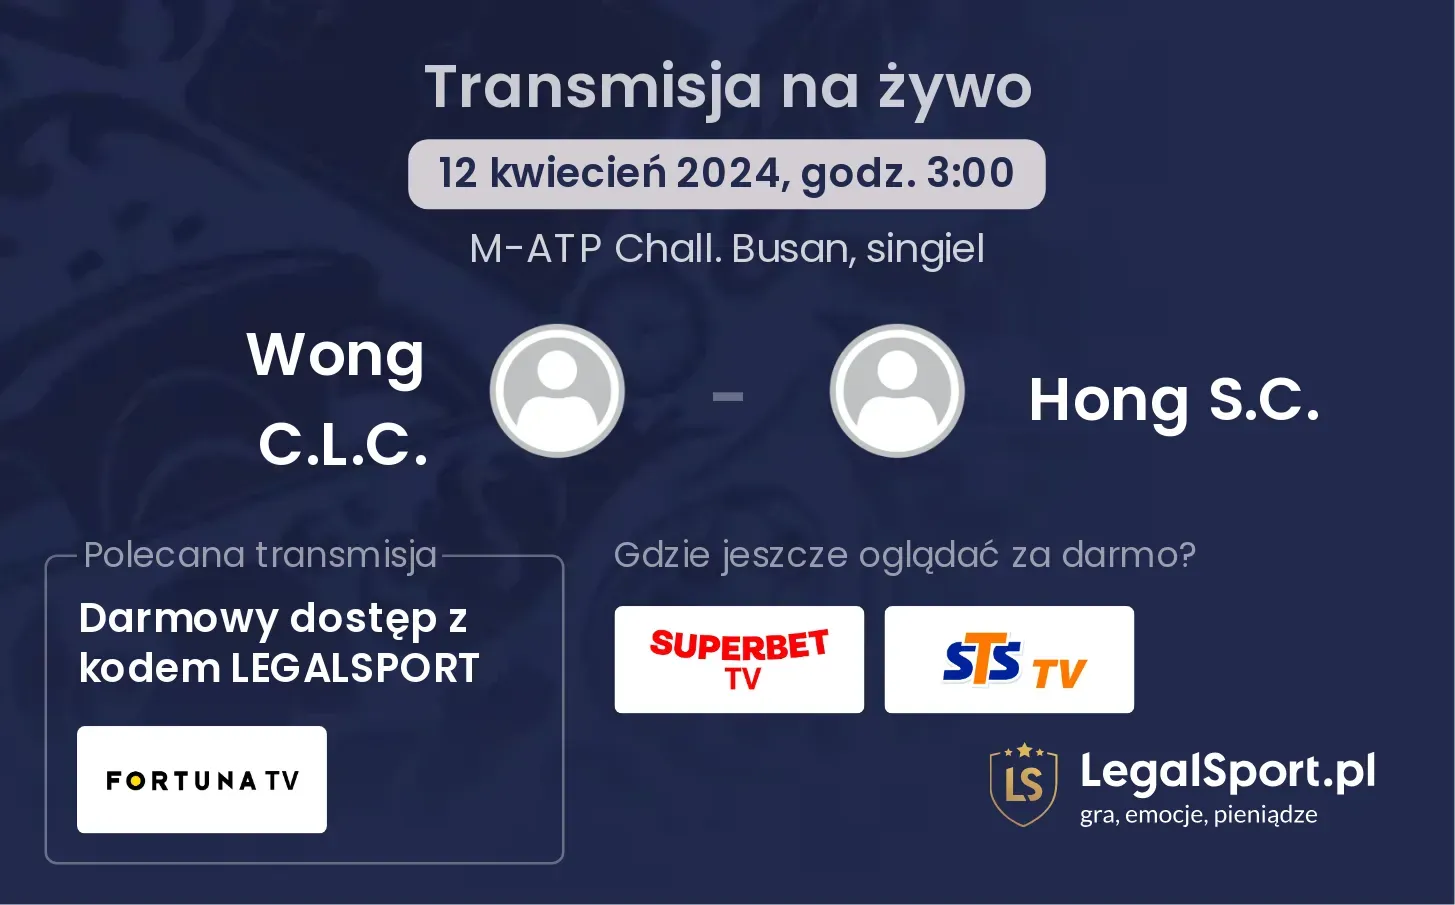 Wong C.L.C. - Hong S.C. transmisja na żywo